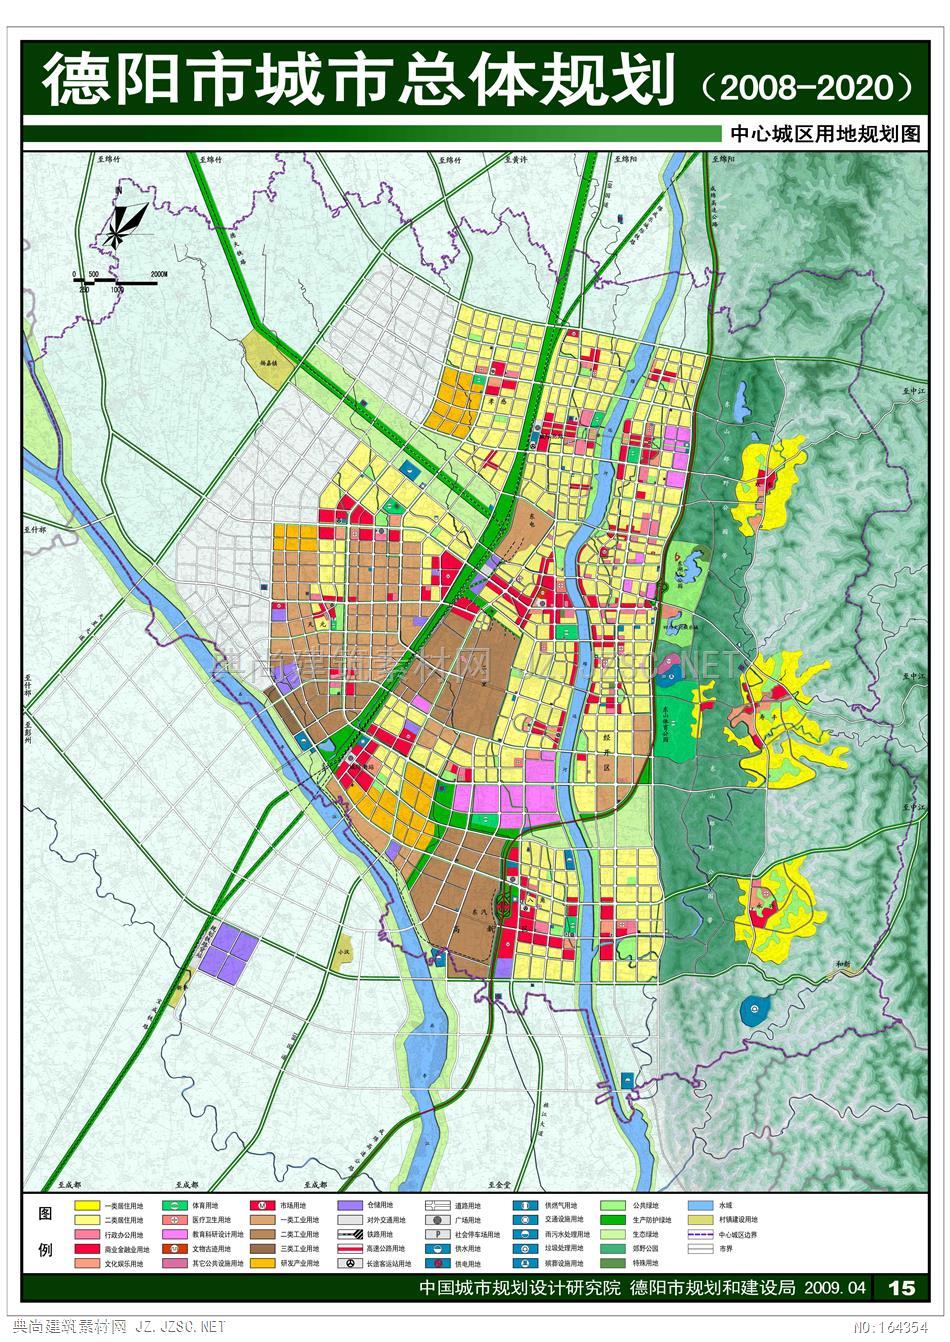 【中】德阳市城市总体规划2008-2020 城市规划方案文本 控制性详细